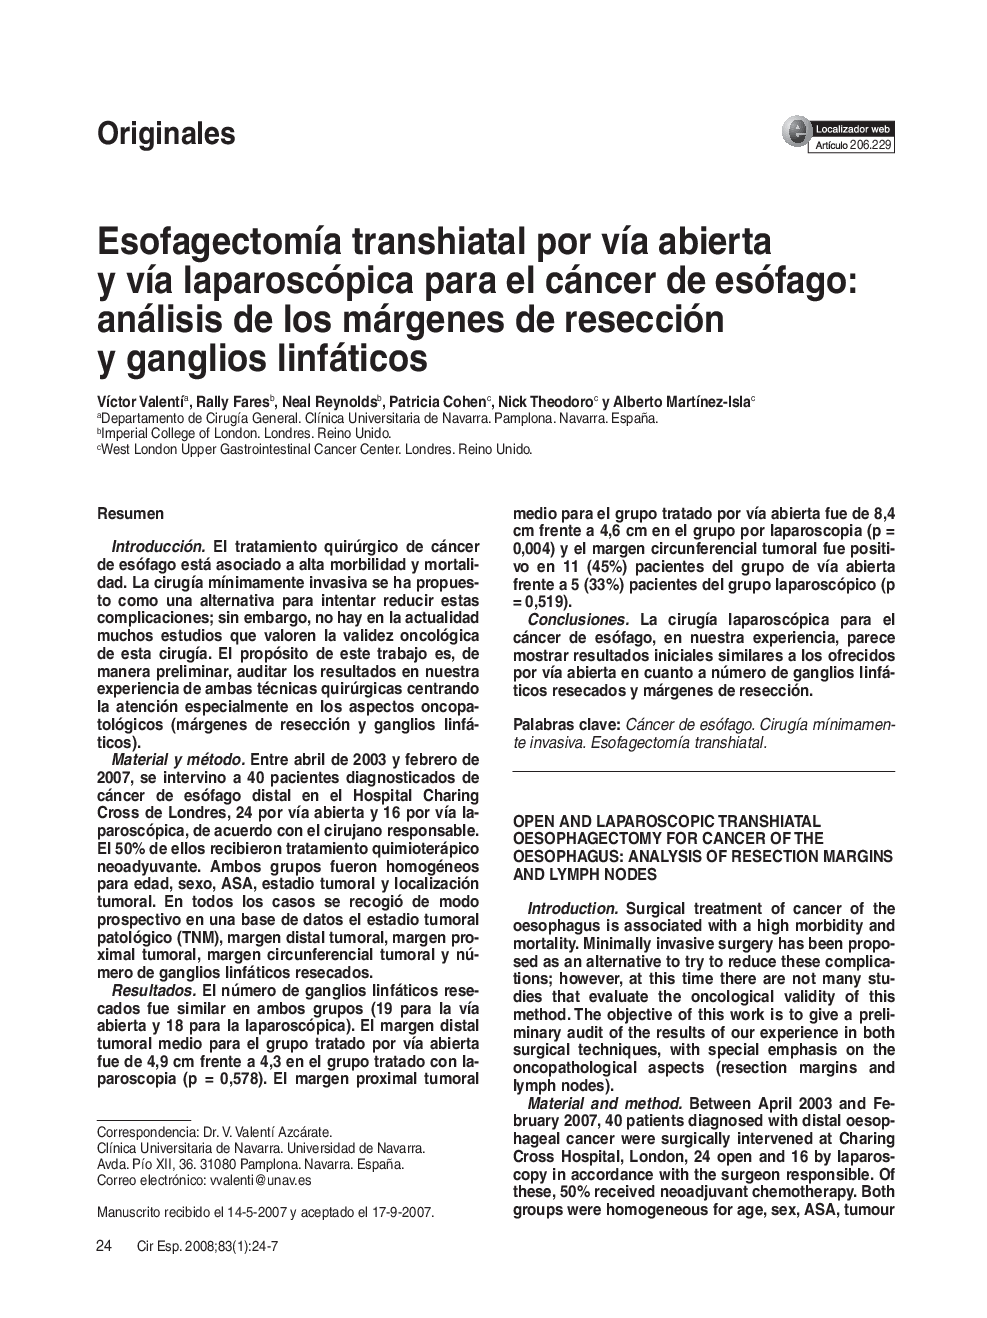 EsofagectomÃ­a transhiatal por vÃ­a abierta y vÃ­a laparoscópica para el cáncer de esófago: análisis de los márgenes de resección y ganglios linfáticos